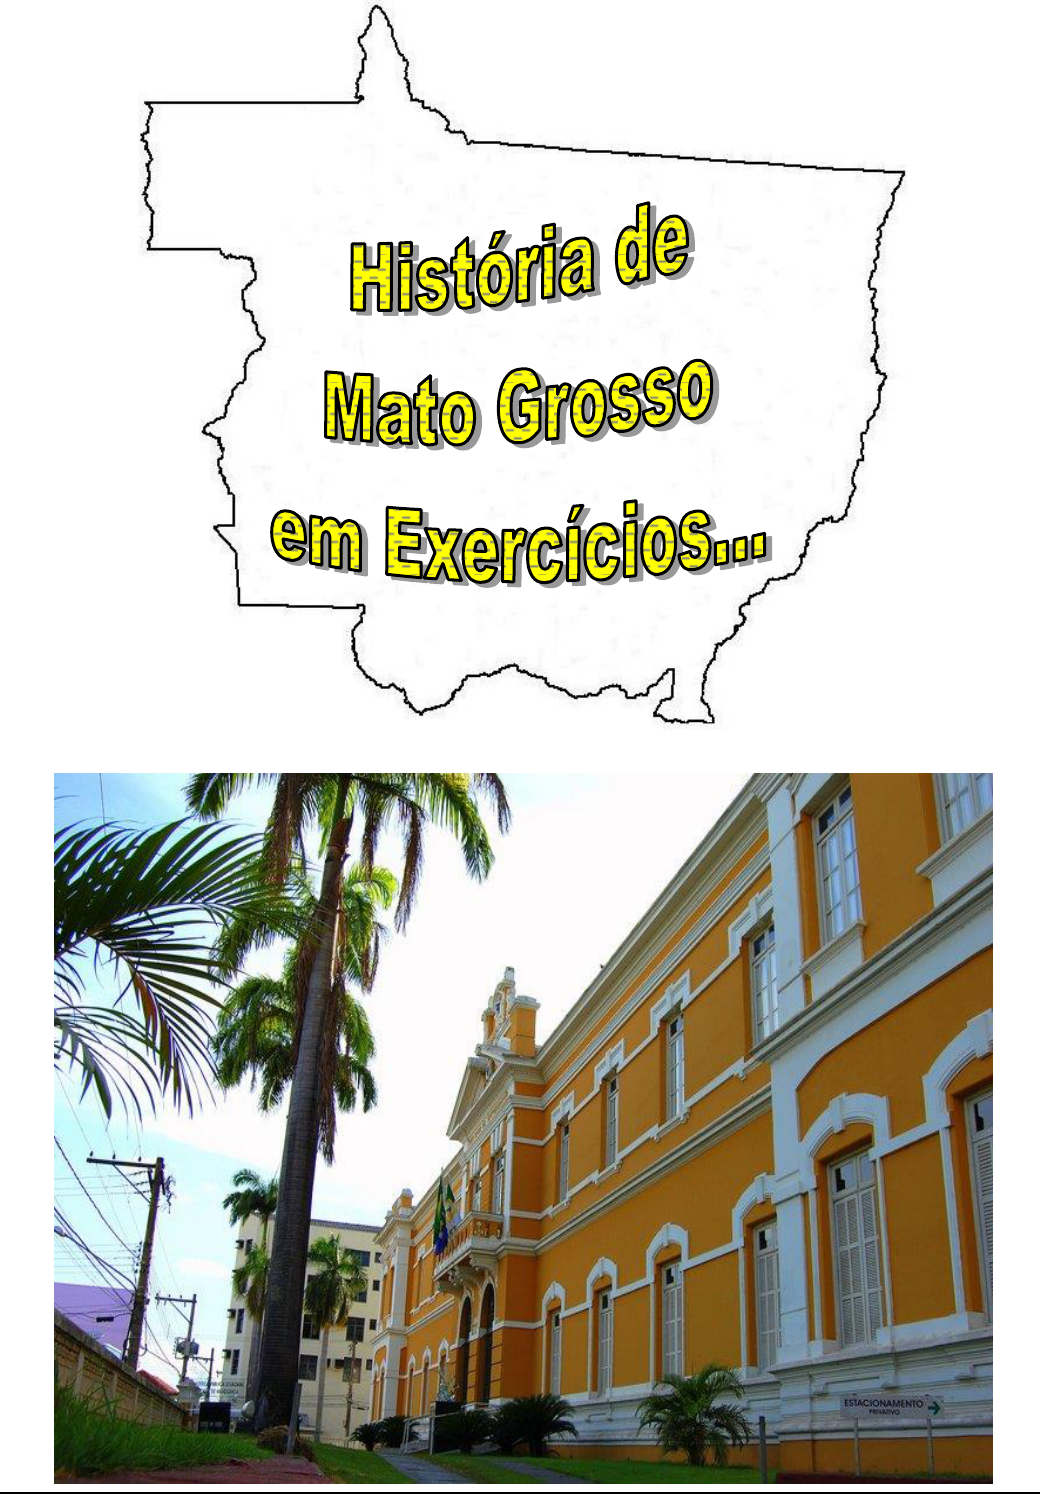 História de Mato Grosso - A Rusga